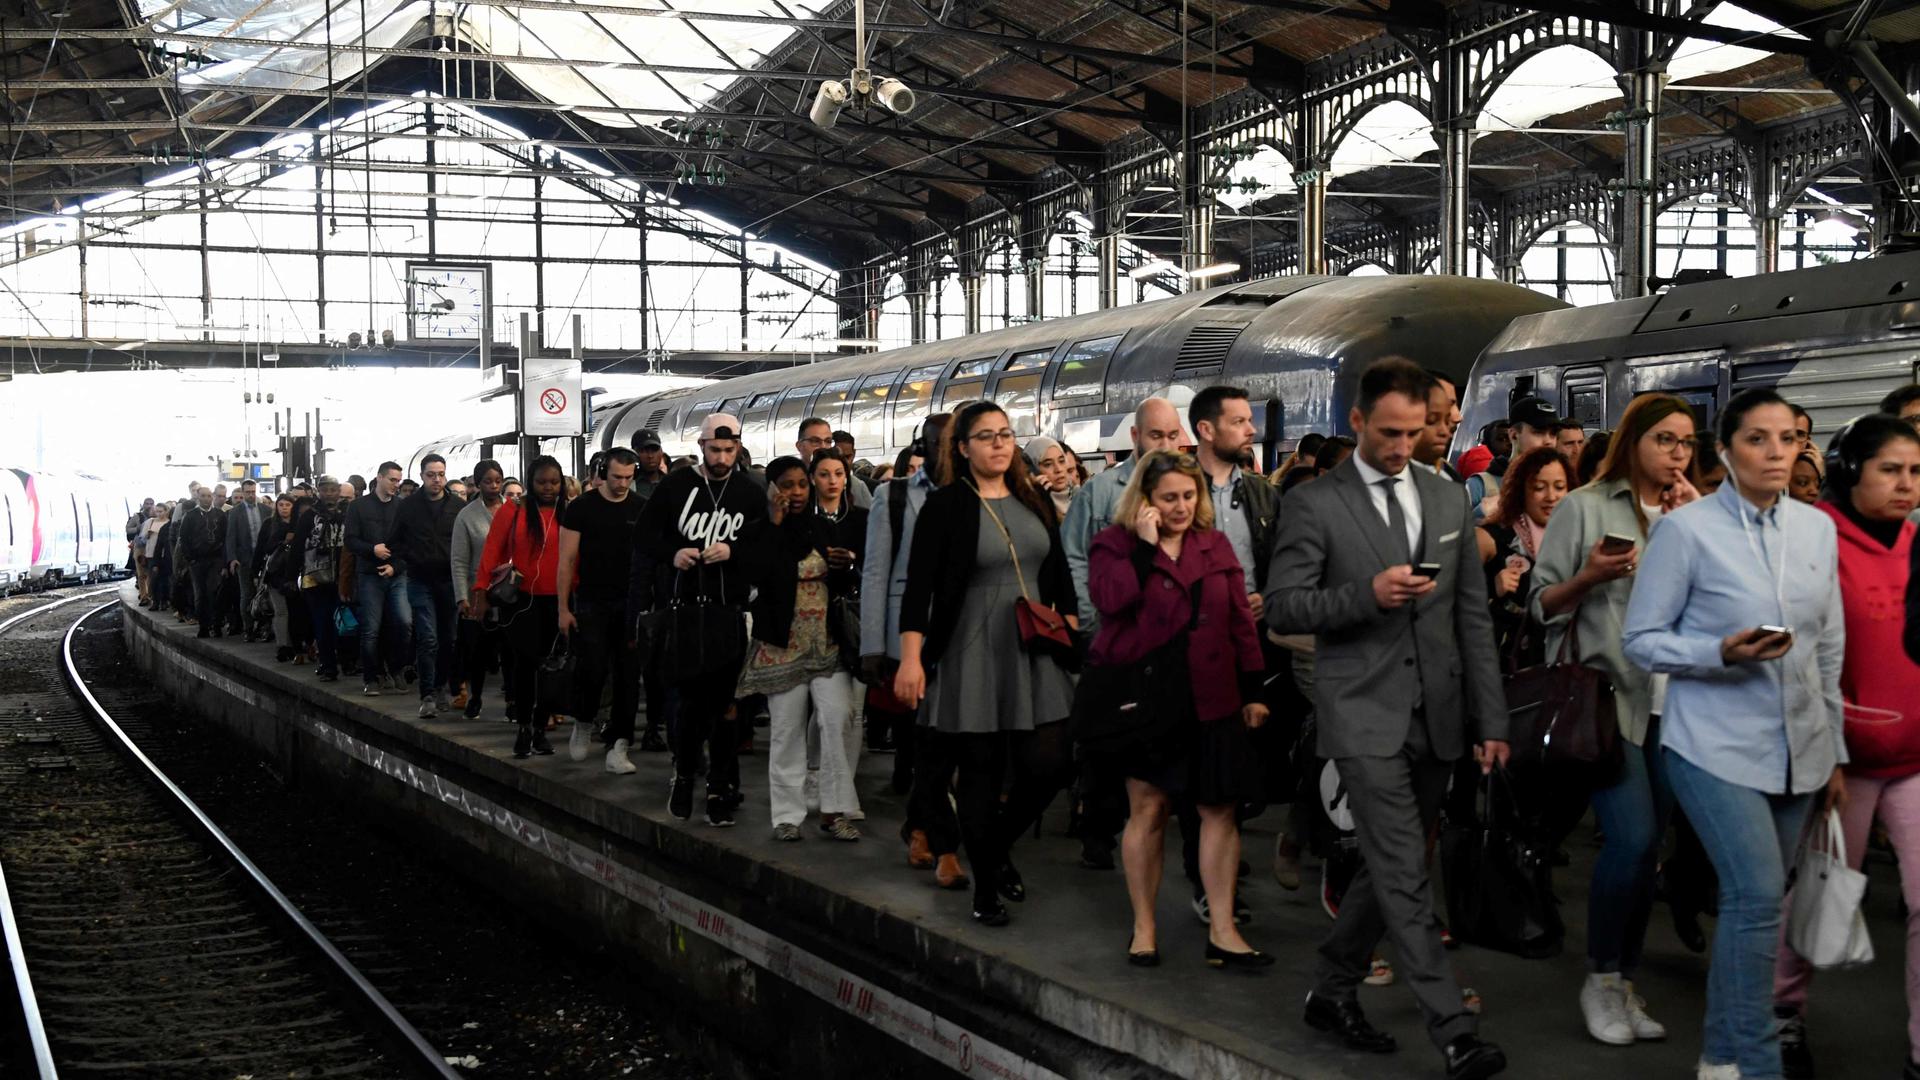 La grève reconductible à partir du 7 mars annoncée par les syndicats représentatifs de la SNCF augure de journées noires pour les usagers du train en France.